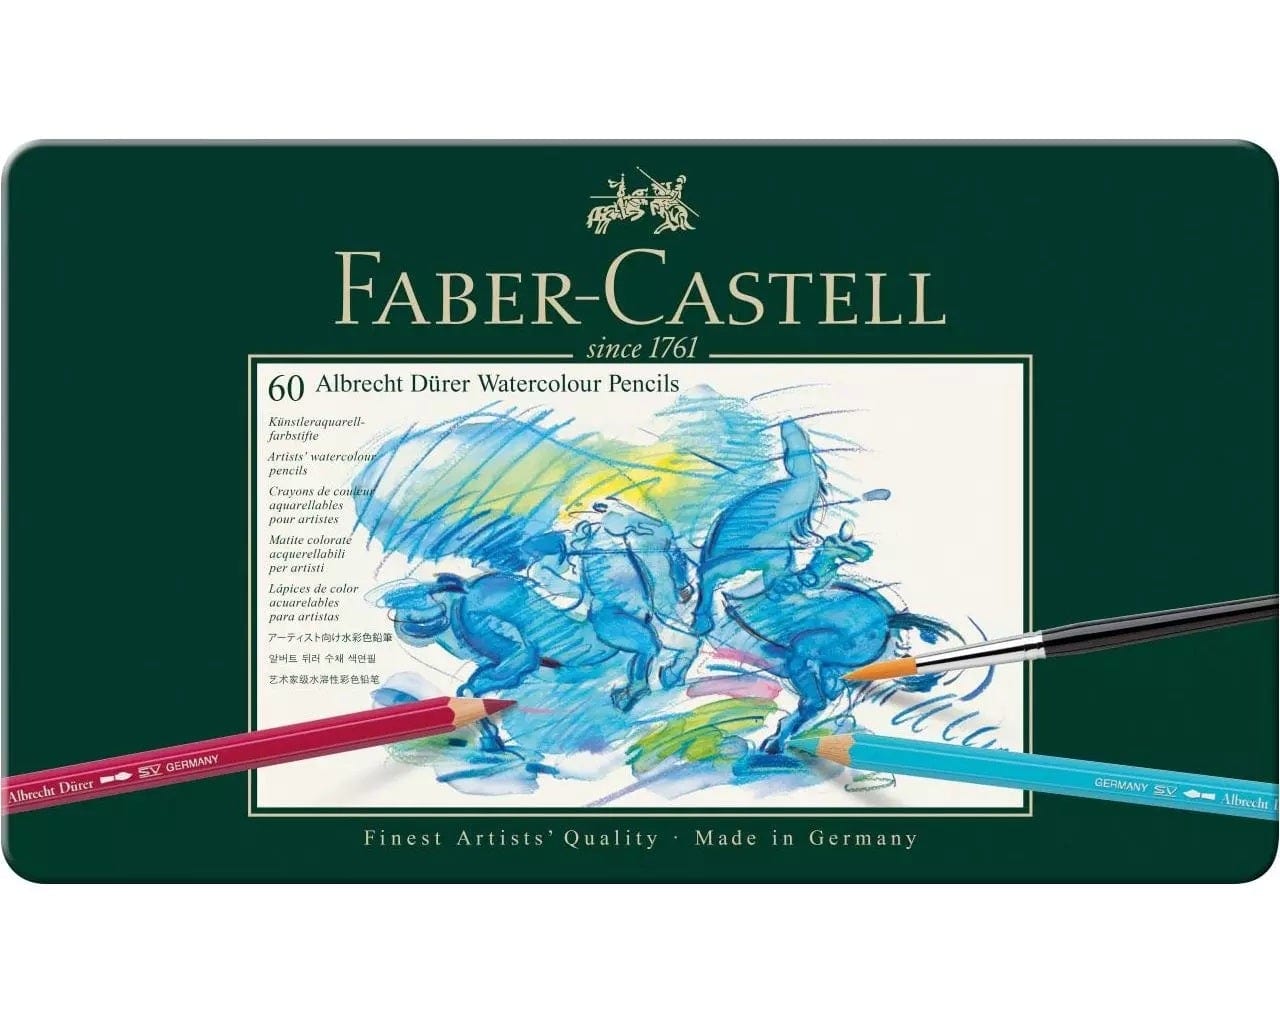 FABER CASTELL A. DURER TIN Faber-Castell - Albrecht Duerer Tin - Watercolour Pencils - 60 Set - Item #117560